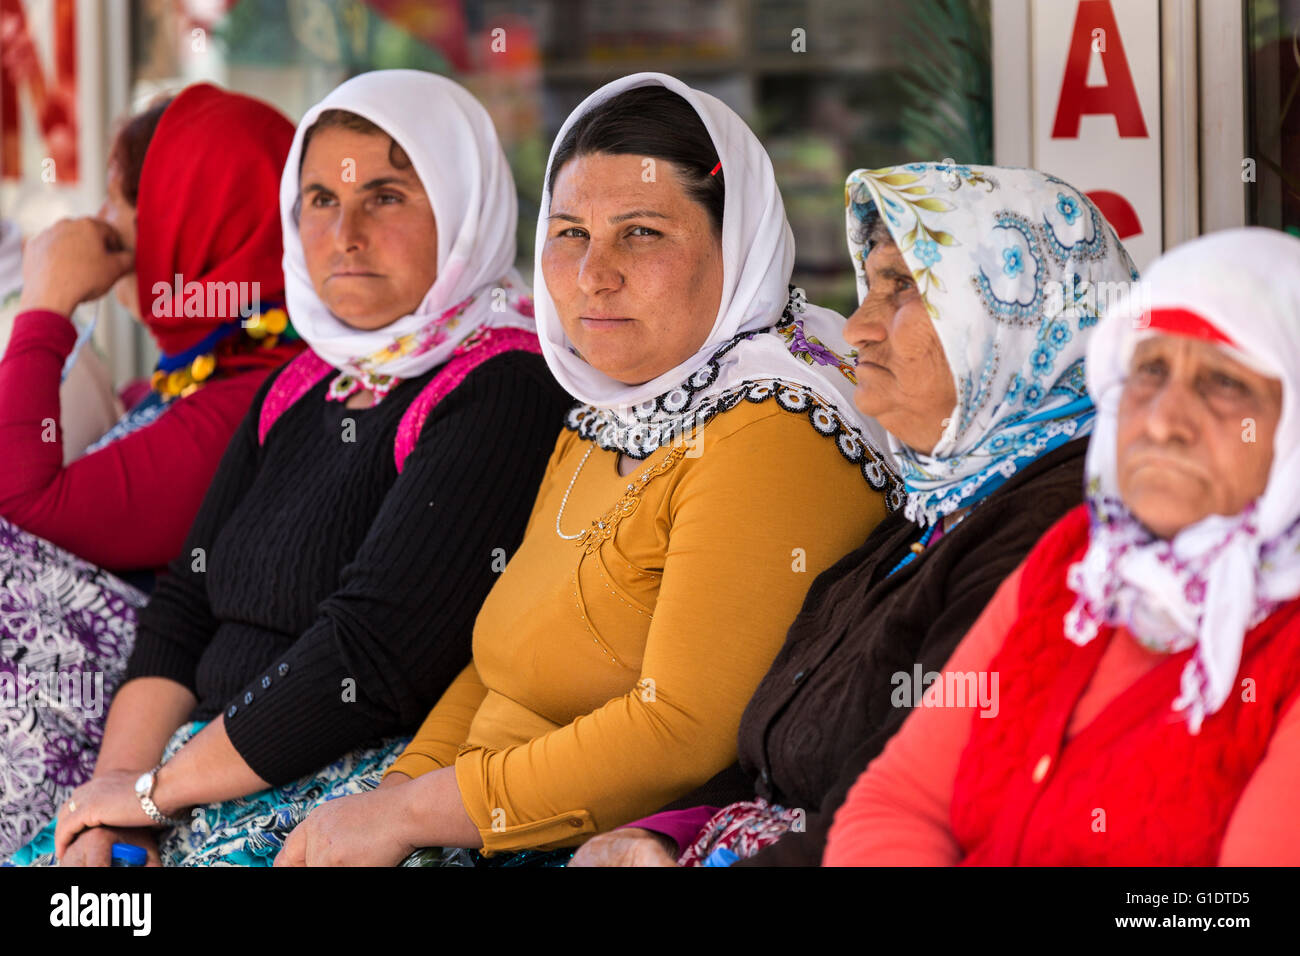 Les femmes locales attendent leur bus dans le marché du village, dans la campagne de la province d'Aydin, en Turquie Banque D'Images